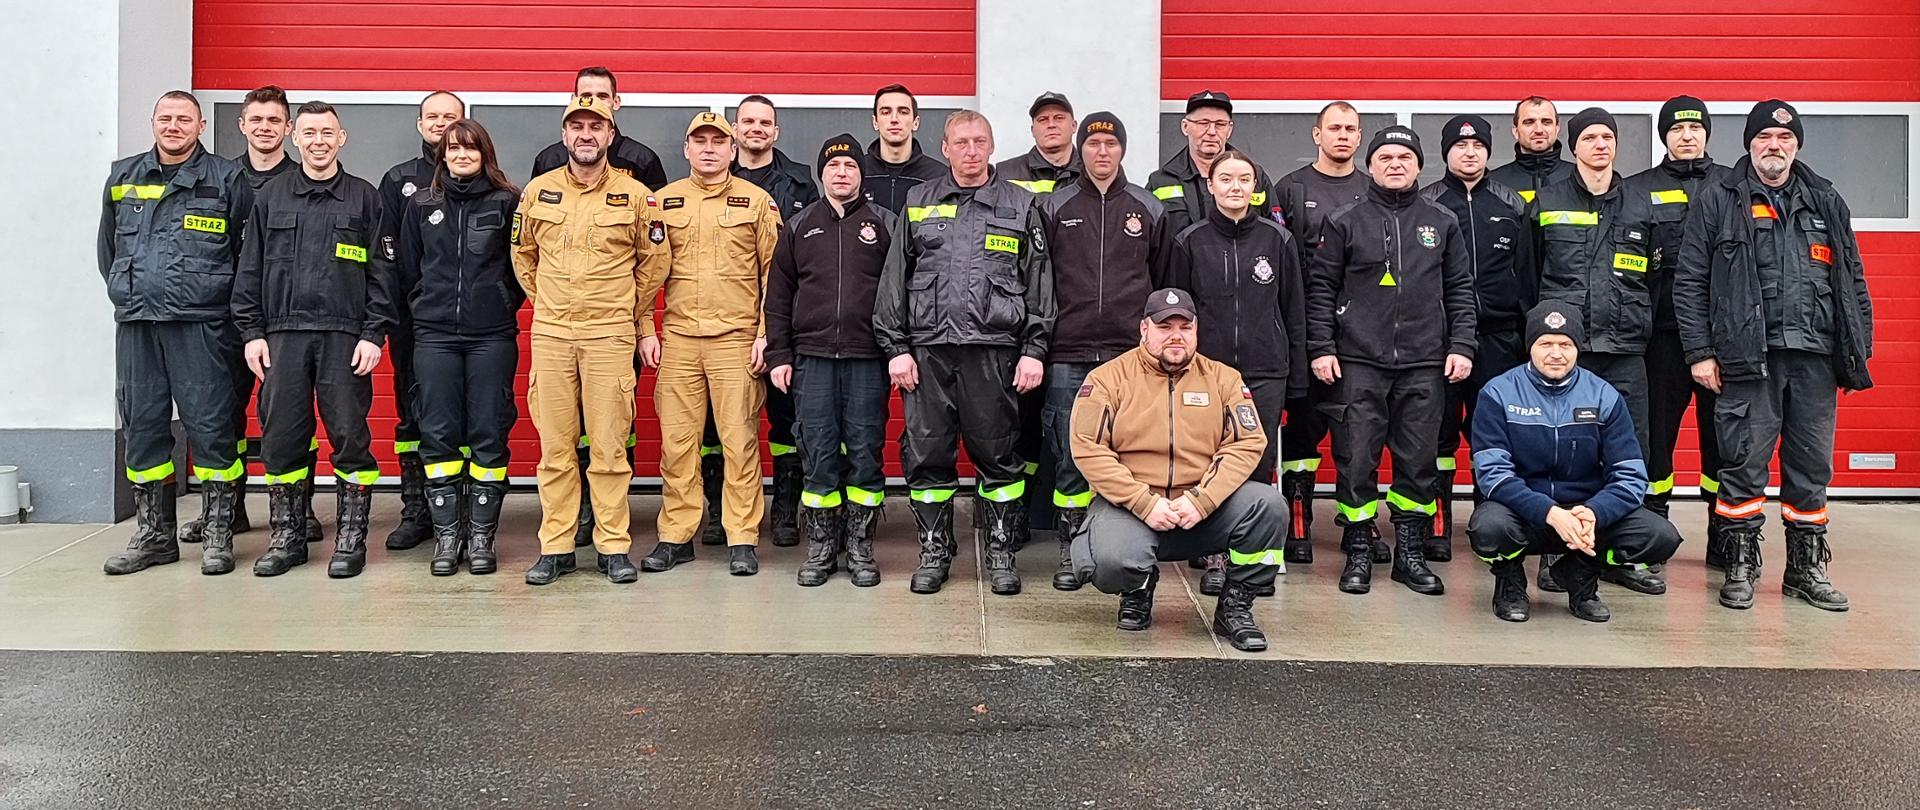 Na zdjęciu widać osoby które przystąpiły do egzaminu dla dowódców OSP wraz z komisją egzaminacyjną, stoją oni przed Komendą Powiatową Państwowej Straży Pożarnej w Miliczu.